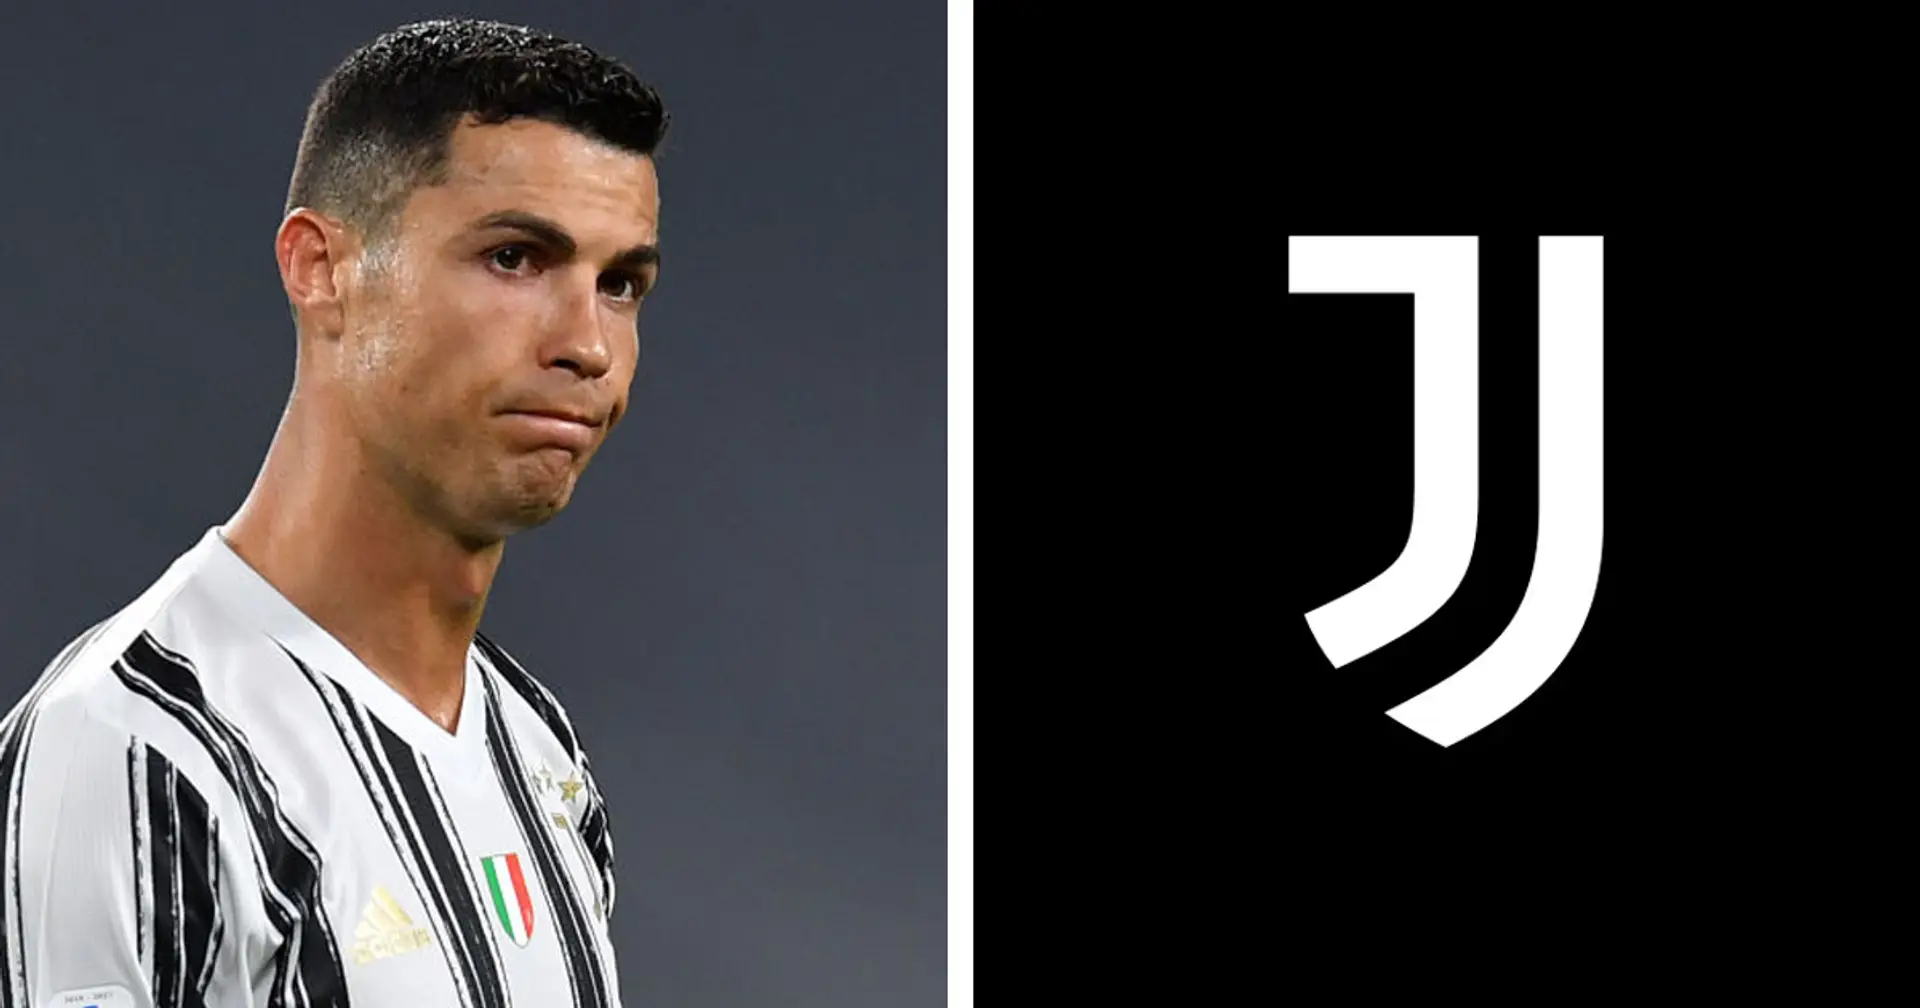 La Juve non vuole ridare un euro a Ronaldo! Il club ha una 'carta segreta' da giocarsi contro le richieste di CR7